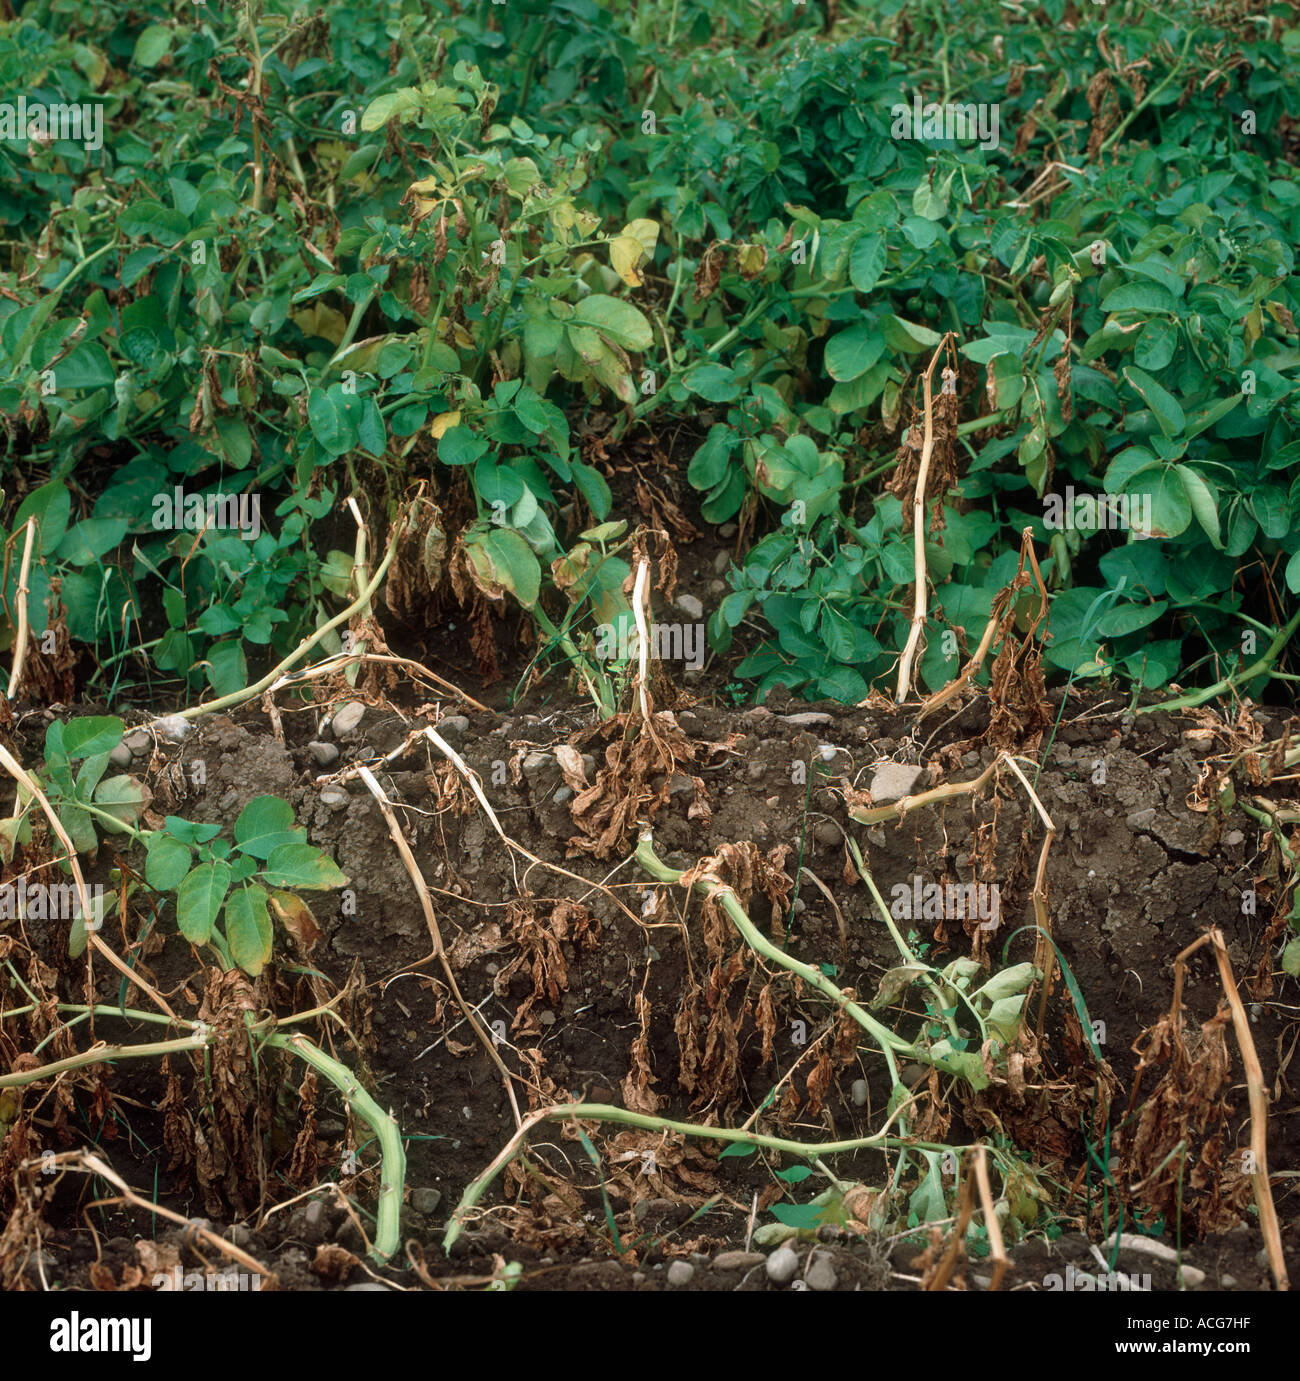 Verticillium wilt Verticillium albo atrum affecting mature potato crop Stock Photo